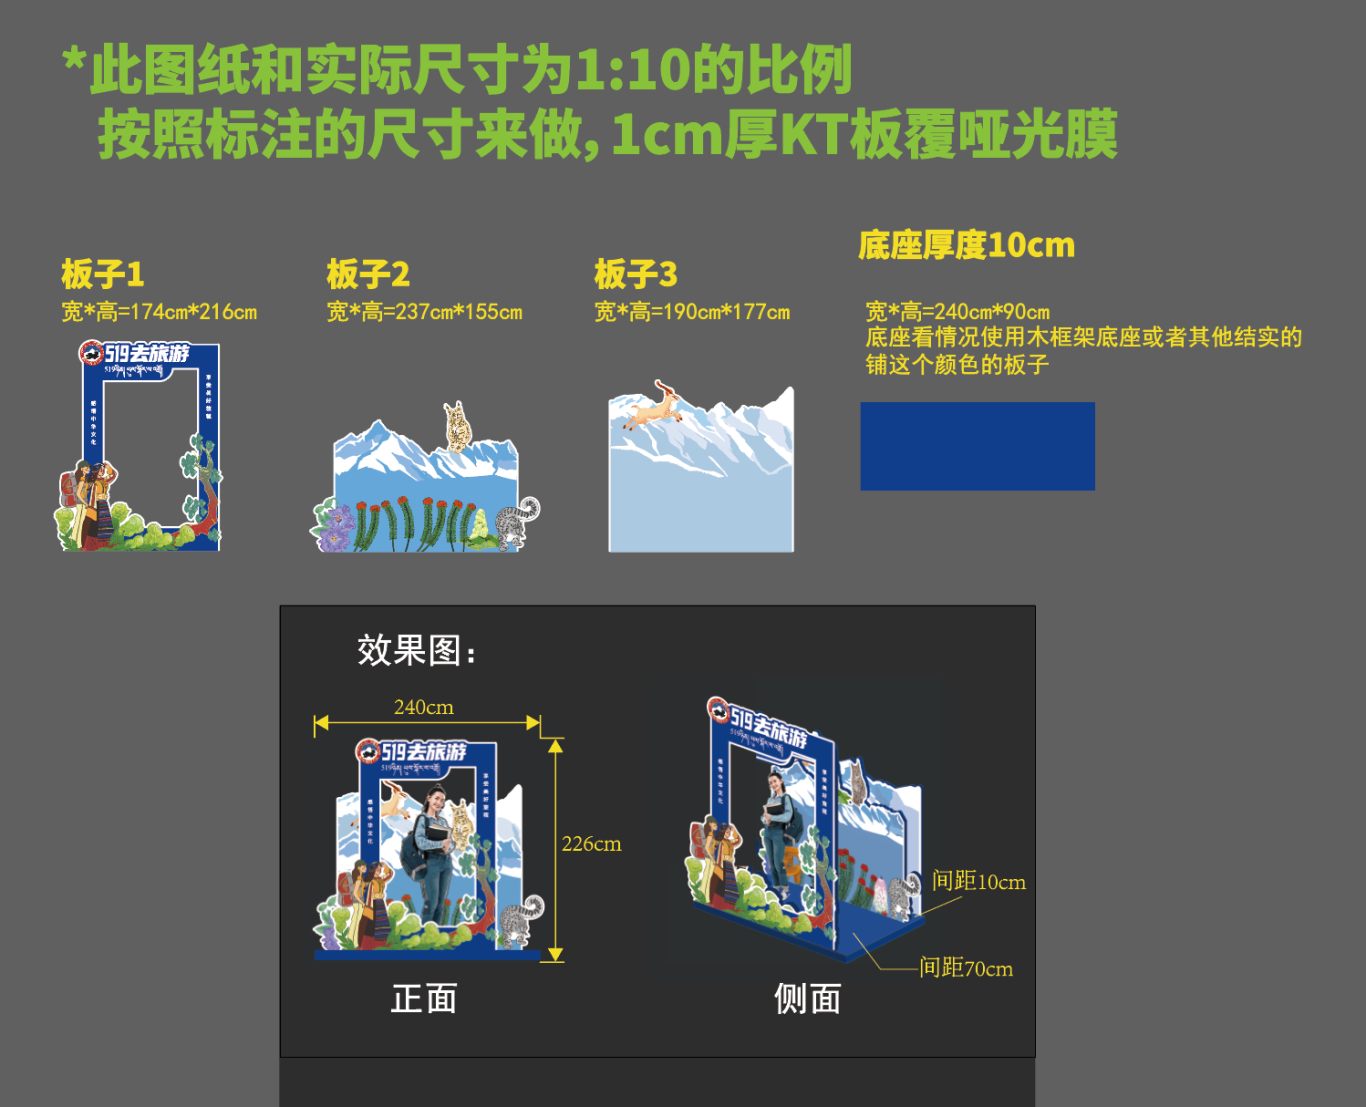 中国旅游日西藏分会场整体视觉设计图11